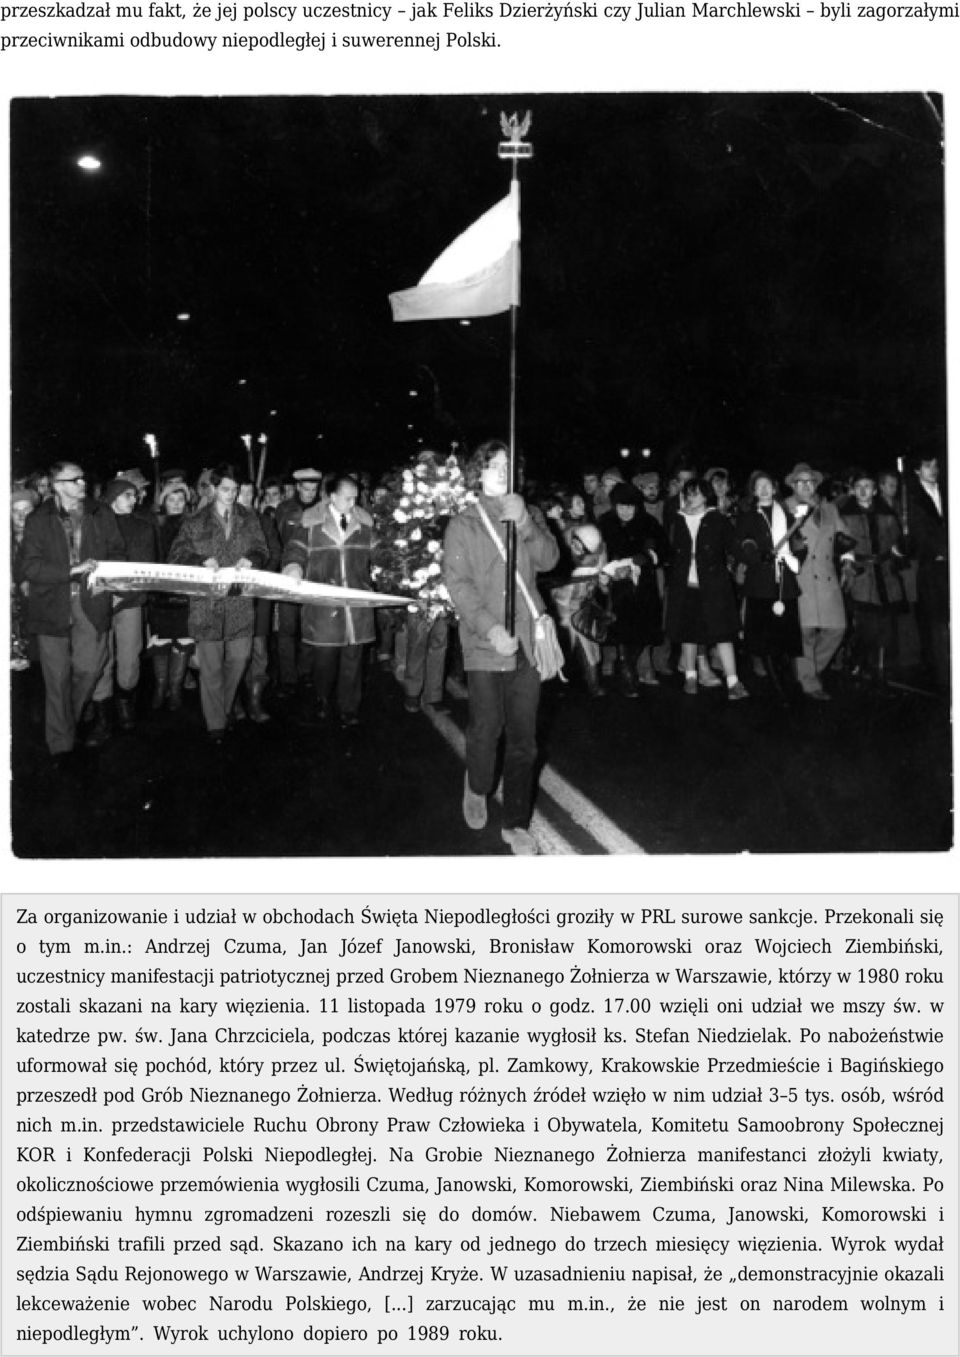 : Andrzej Czuma, Jan Józef Janowski, Bronisław Komorowski oraz Wojciech Ziembiński, uczestnicy manifestacji patriotycznej przed Grobem Nieznanego Żołnierza w Warszawie, którzy w 1980 roku zostali